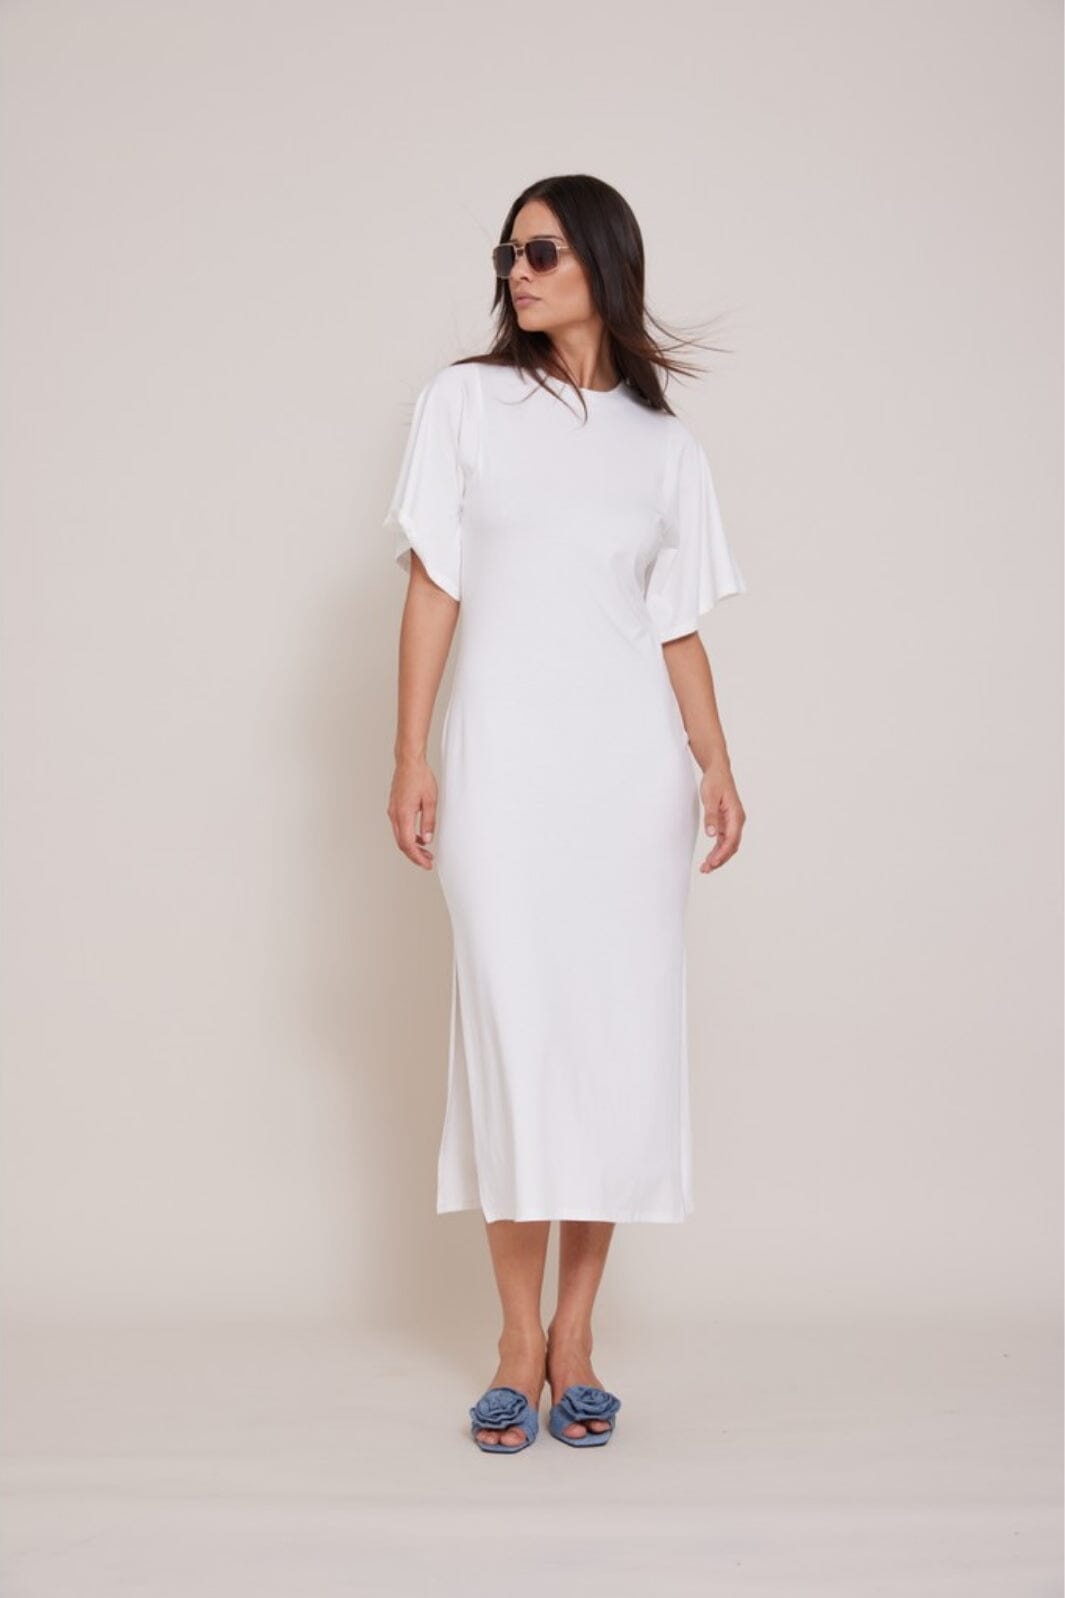 Bruuns Bazaar - AlnusBBNathali dress - White Kjoler 